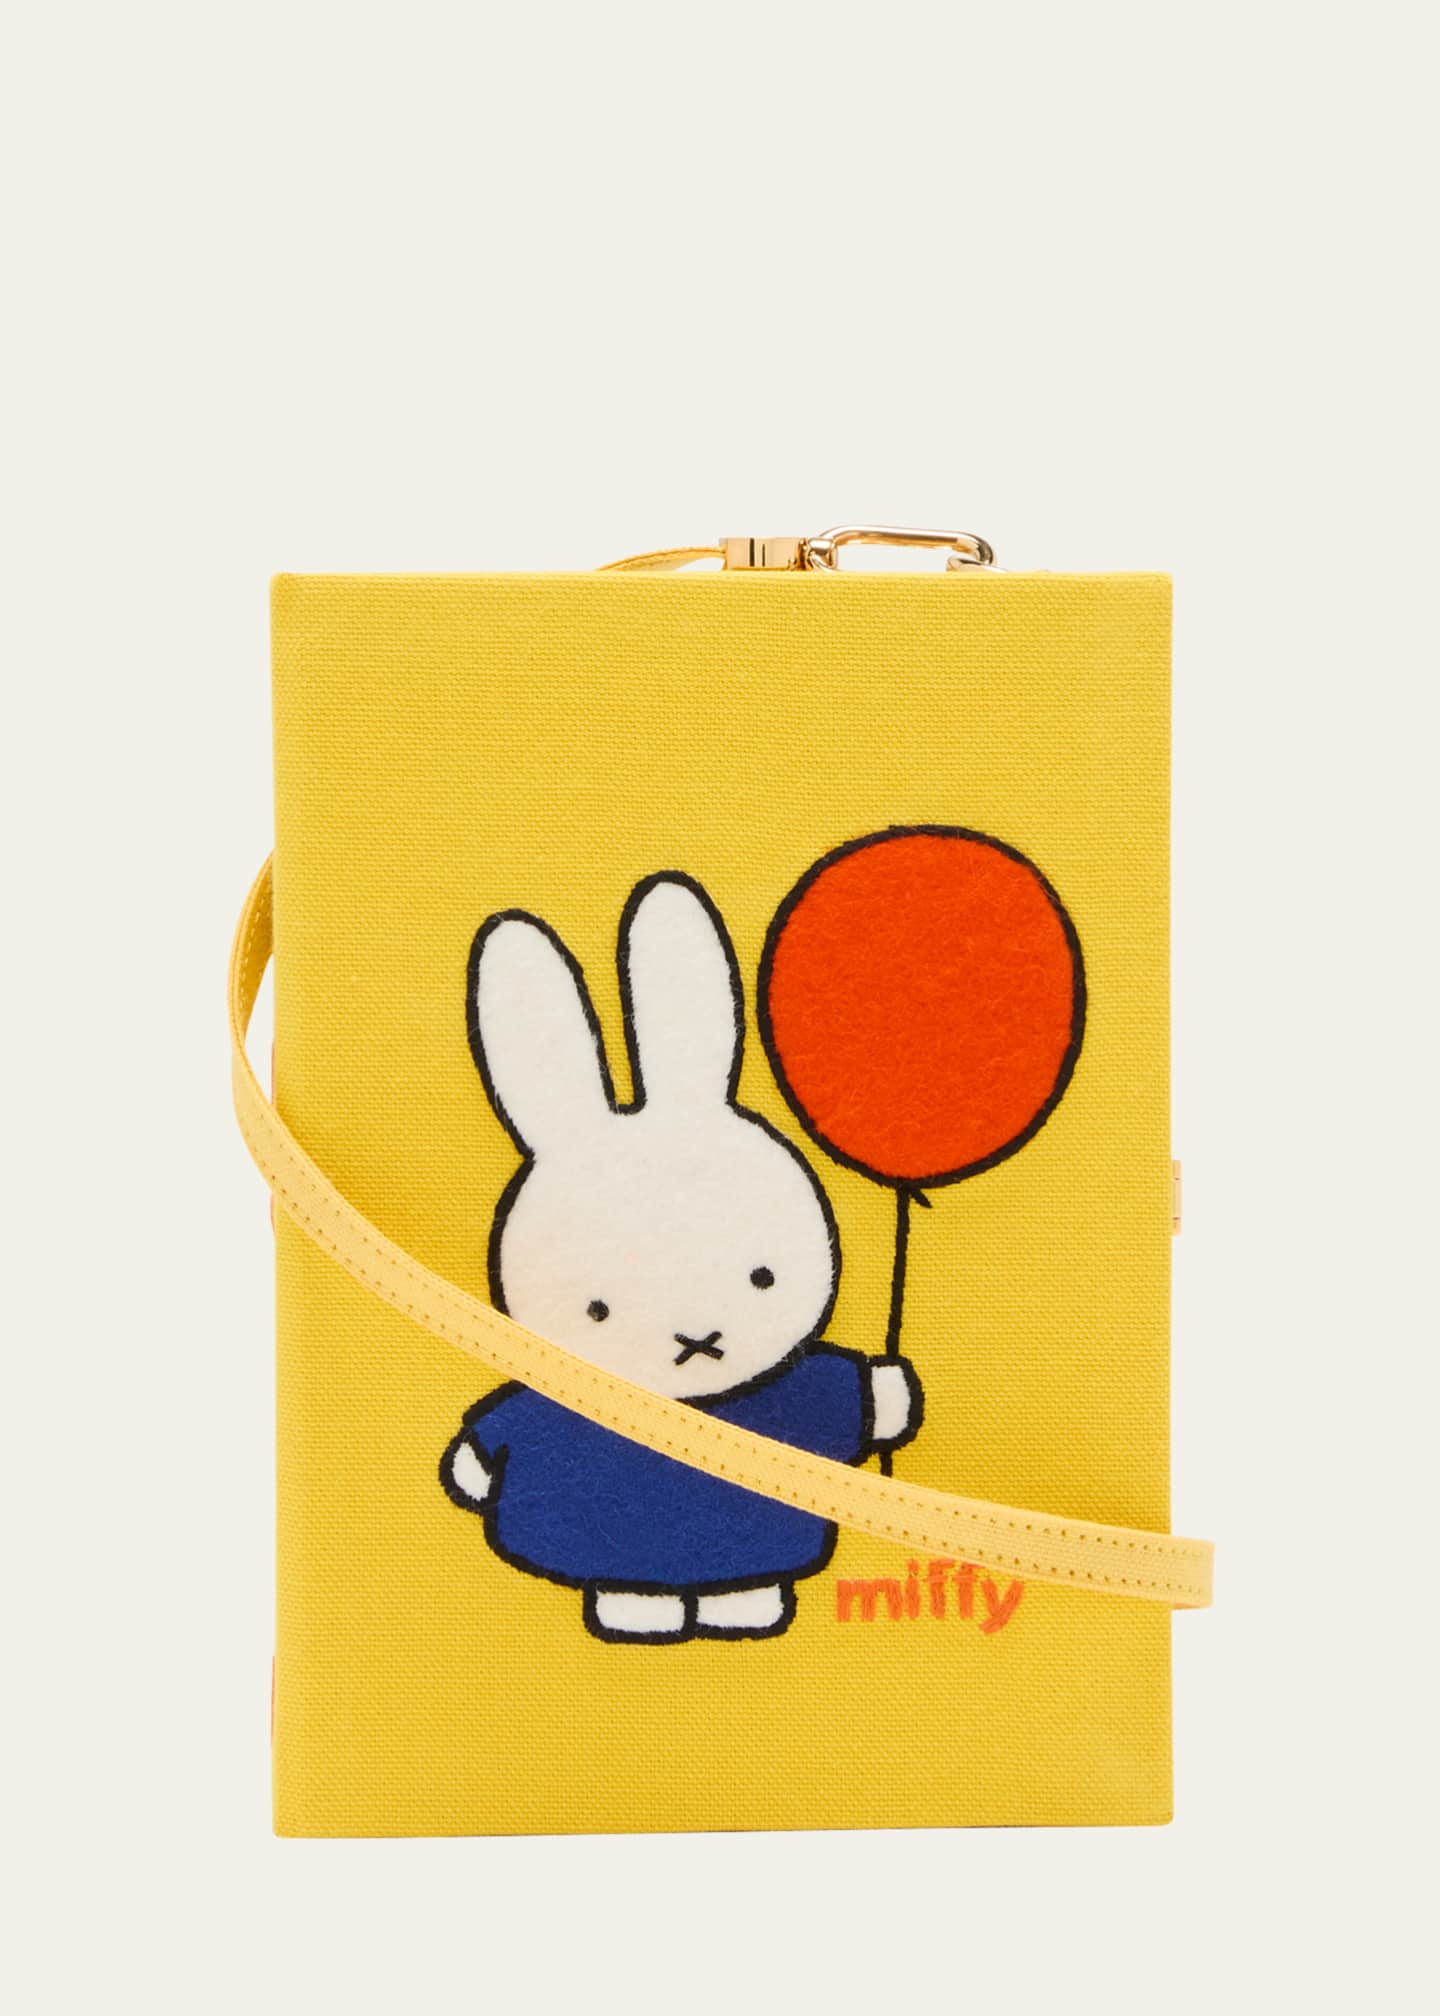 Olympia Le-Tan Miffy Balloon Book Clutch Bag - Bergdorf Goodman